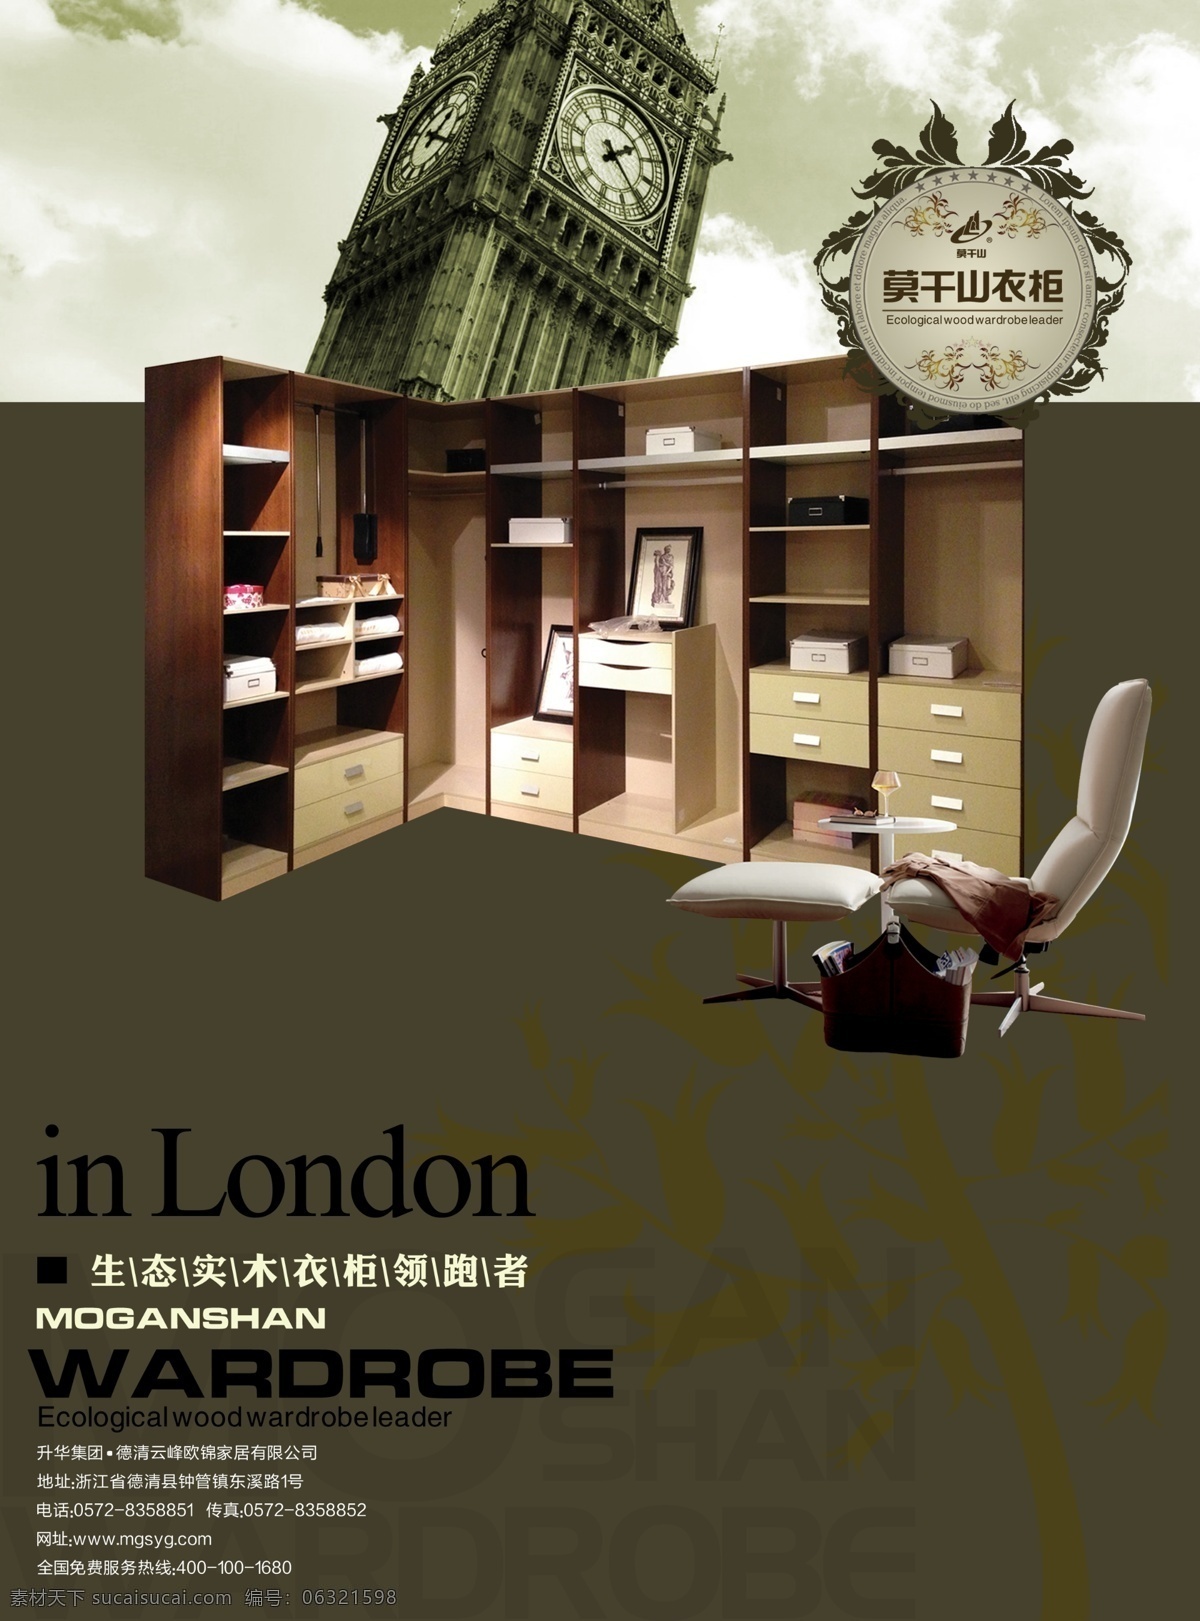 莫干山 衣柜 海报 伦敦 莫干山衣柜 椅子 天空 暗纹 广告设计模板 源文件